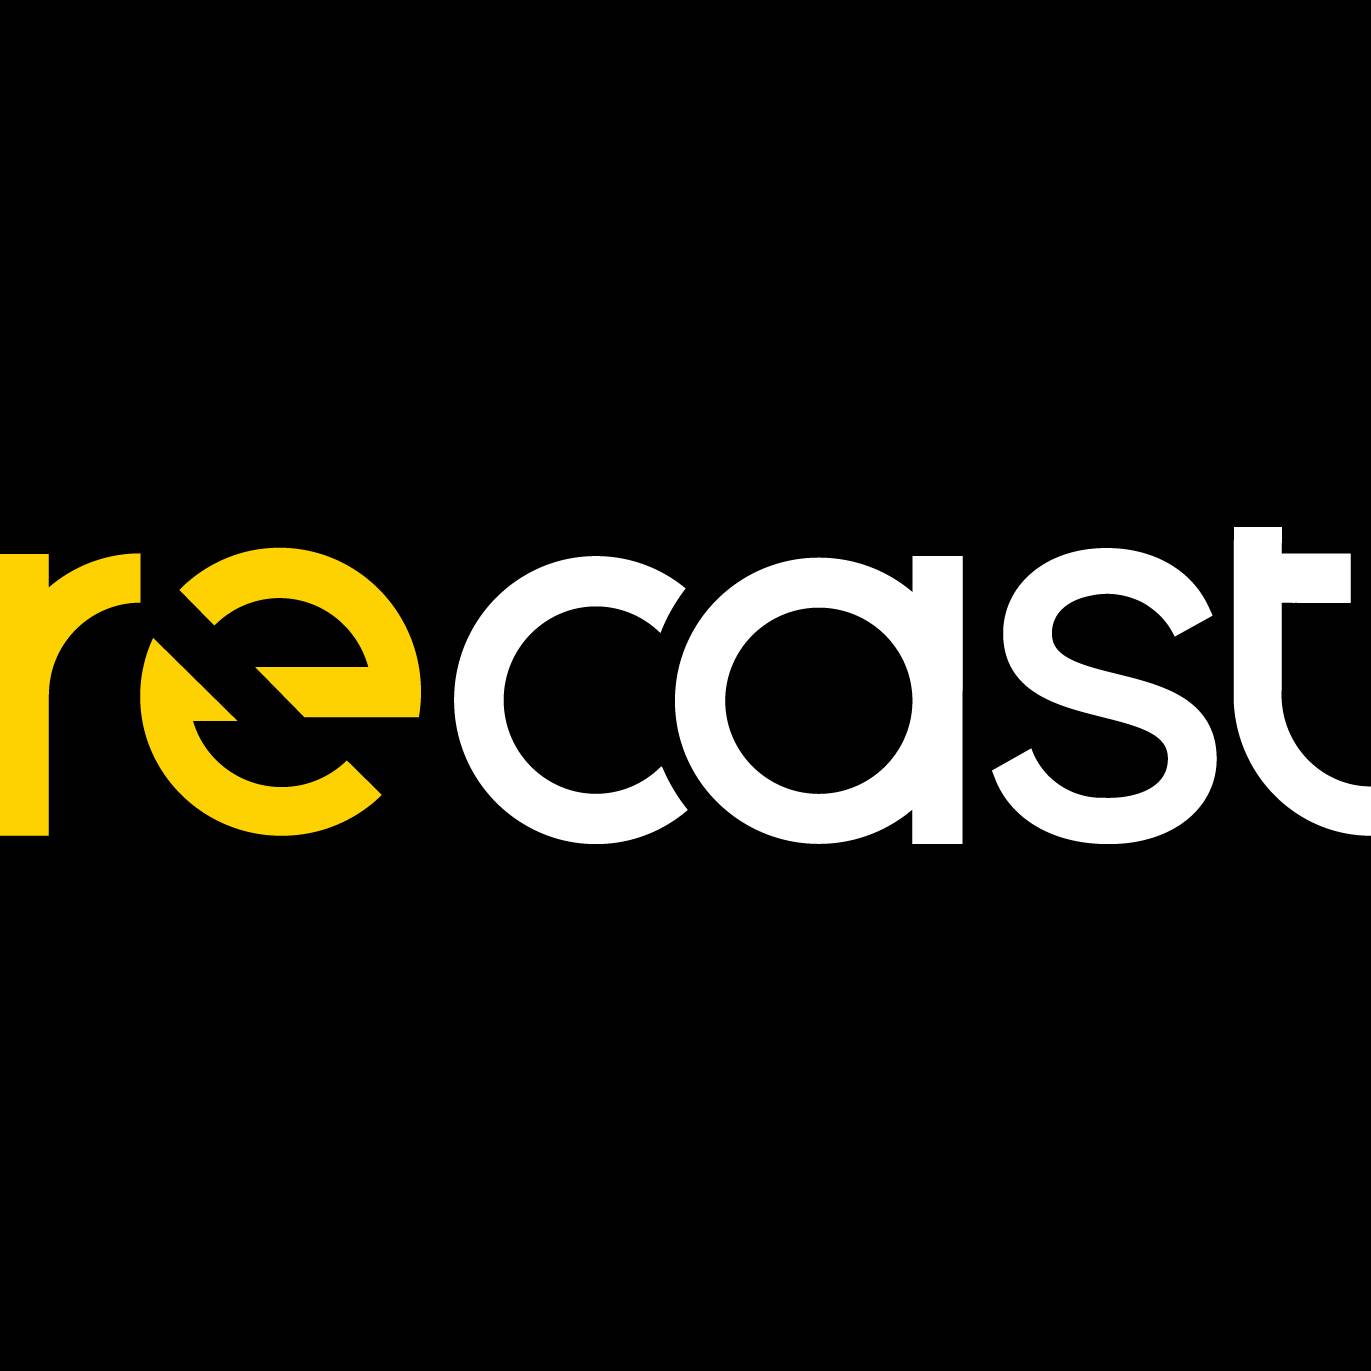 Recast Logo